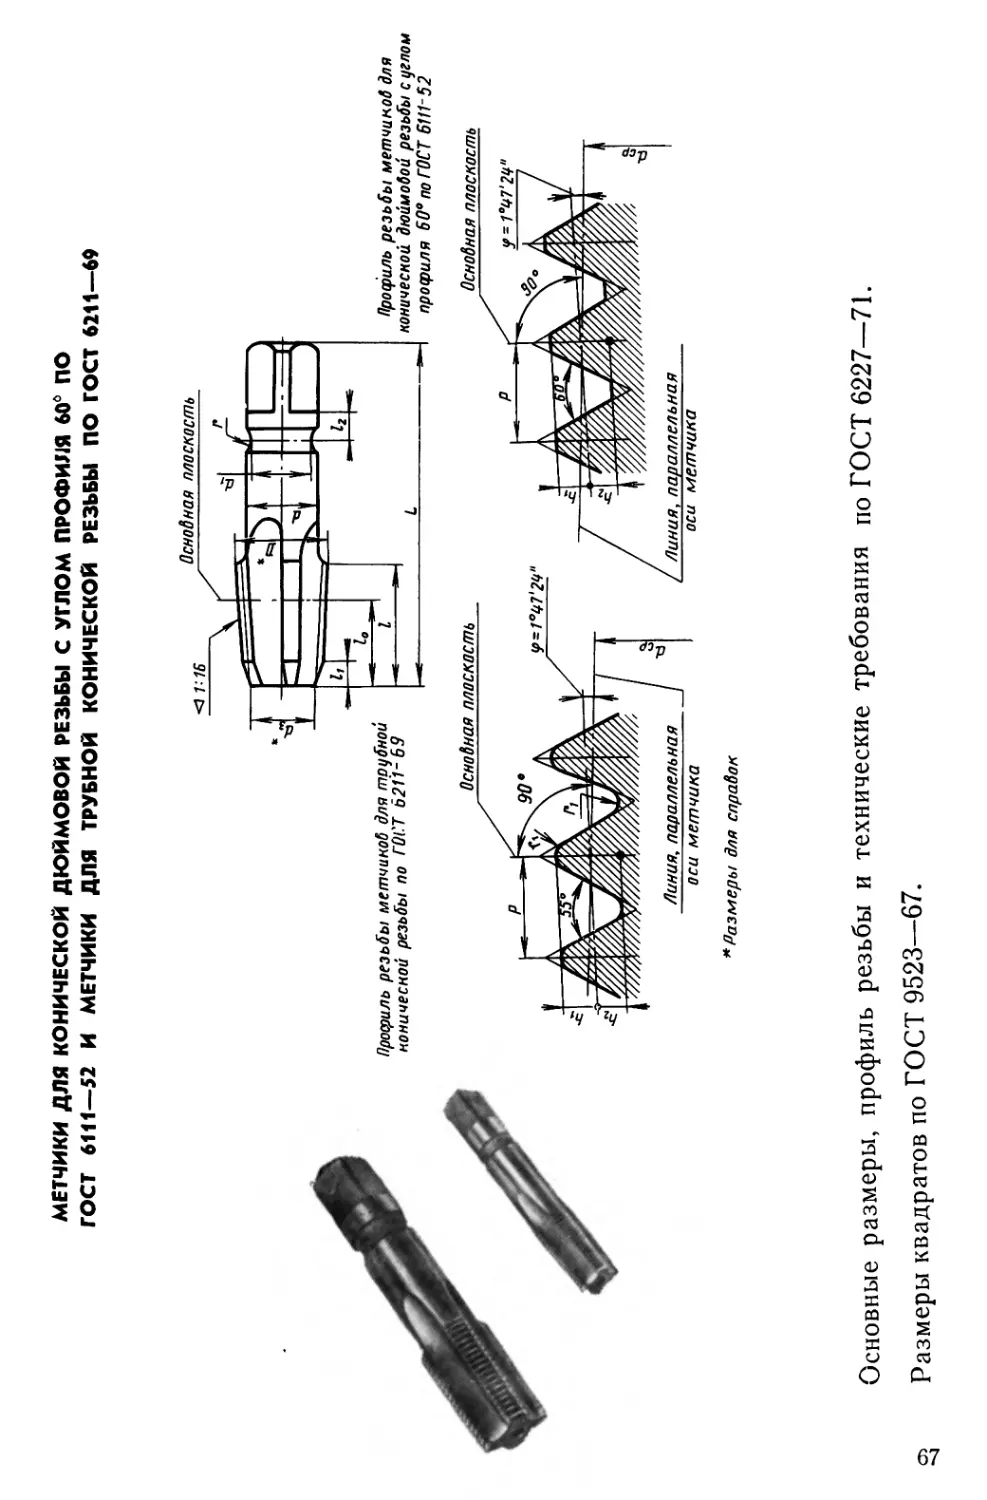 Метчики для конической дюймовой резьбы с углом профиля 60° по ГОСТ 6111—52 и метчики для трубной конической резьбы по ГОСТ 6211—69